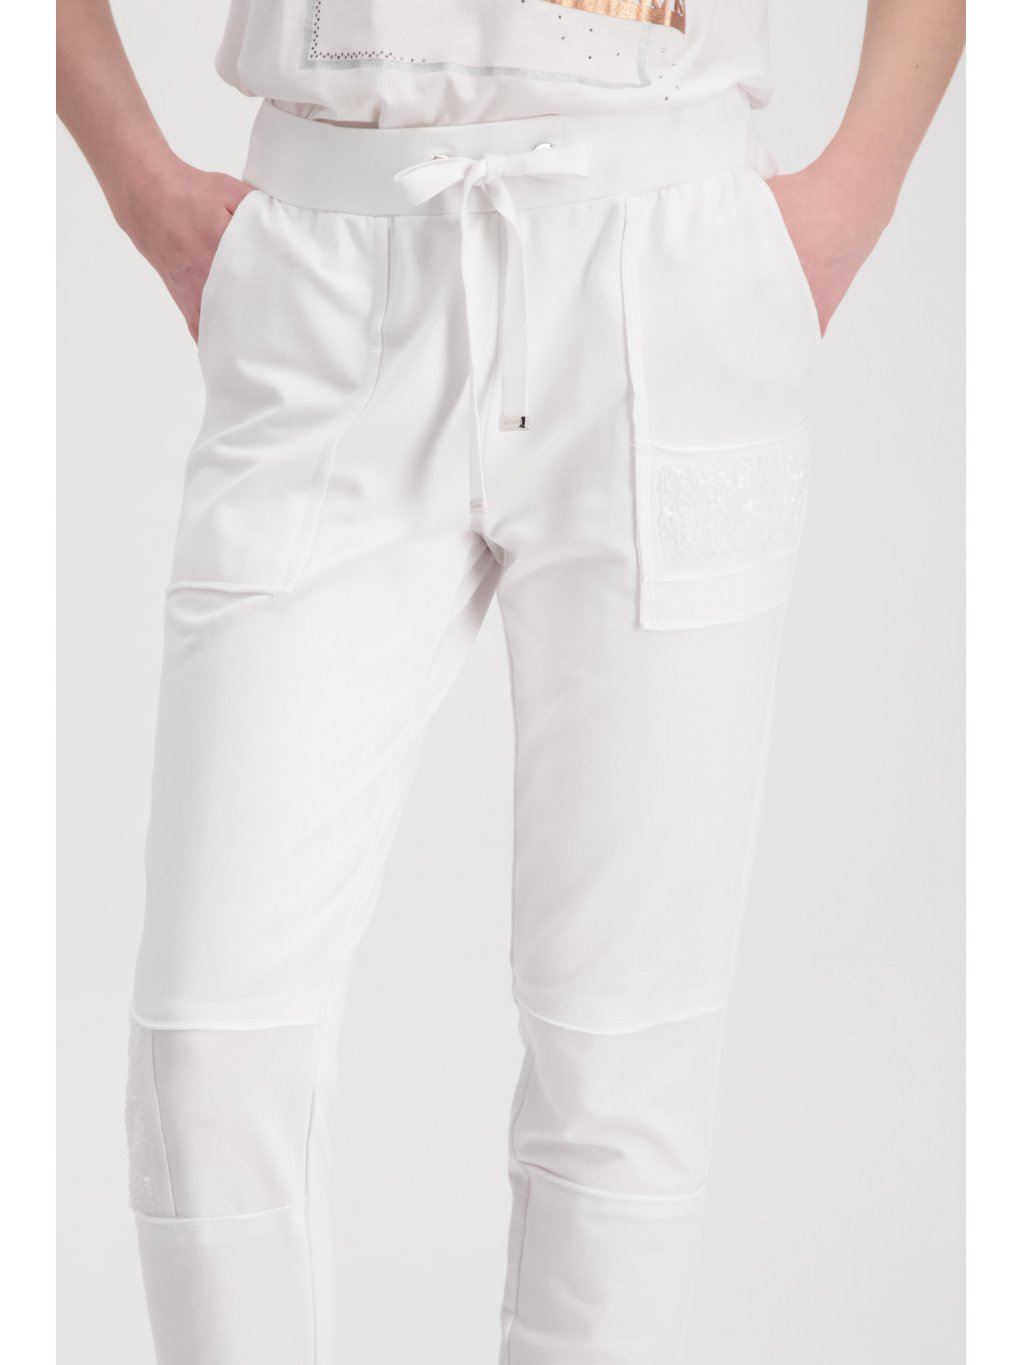 Kalhoty Monari 6778 bílé tepláky s flitry